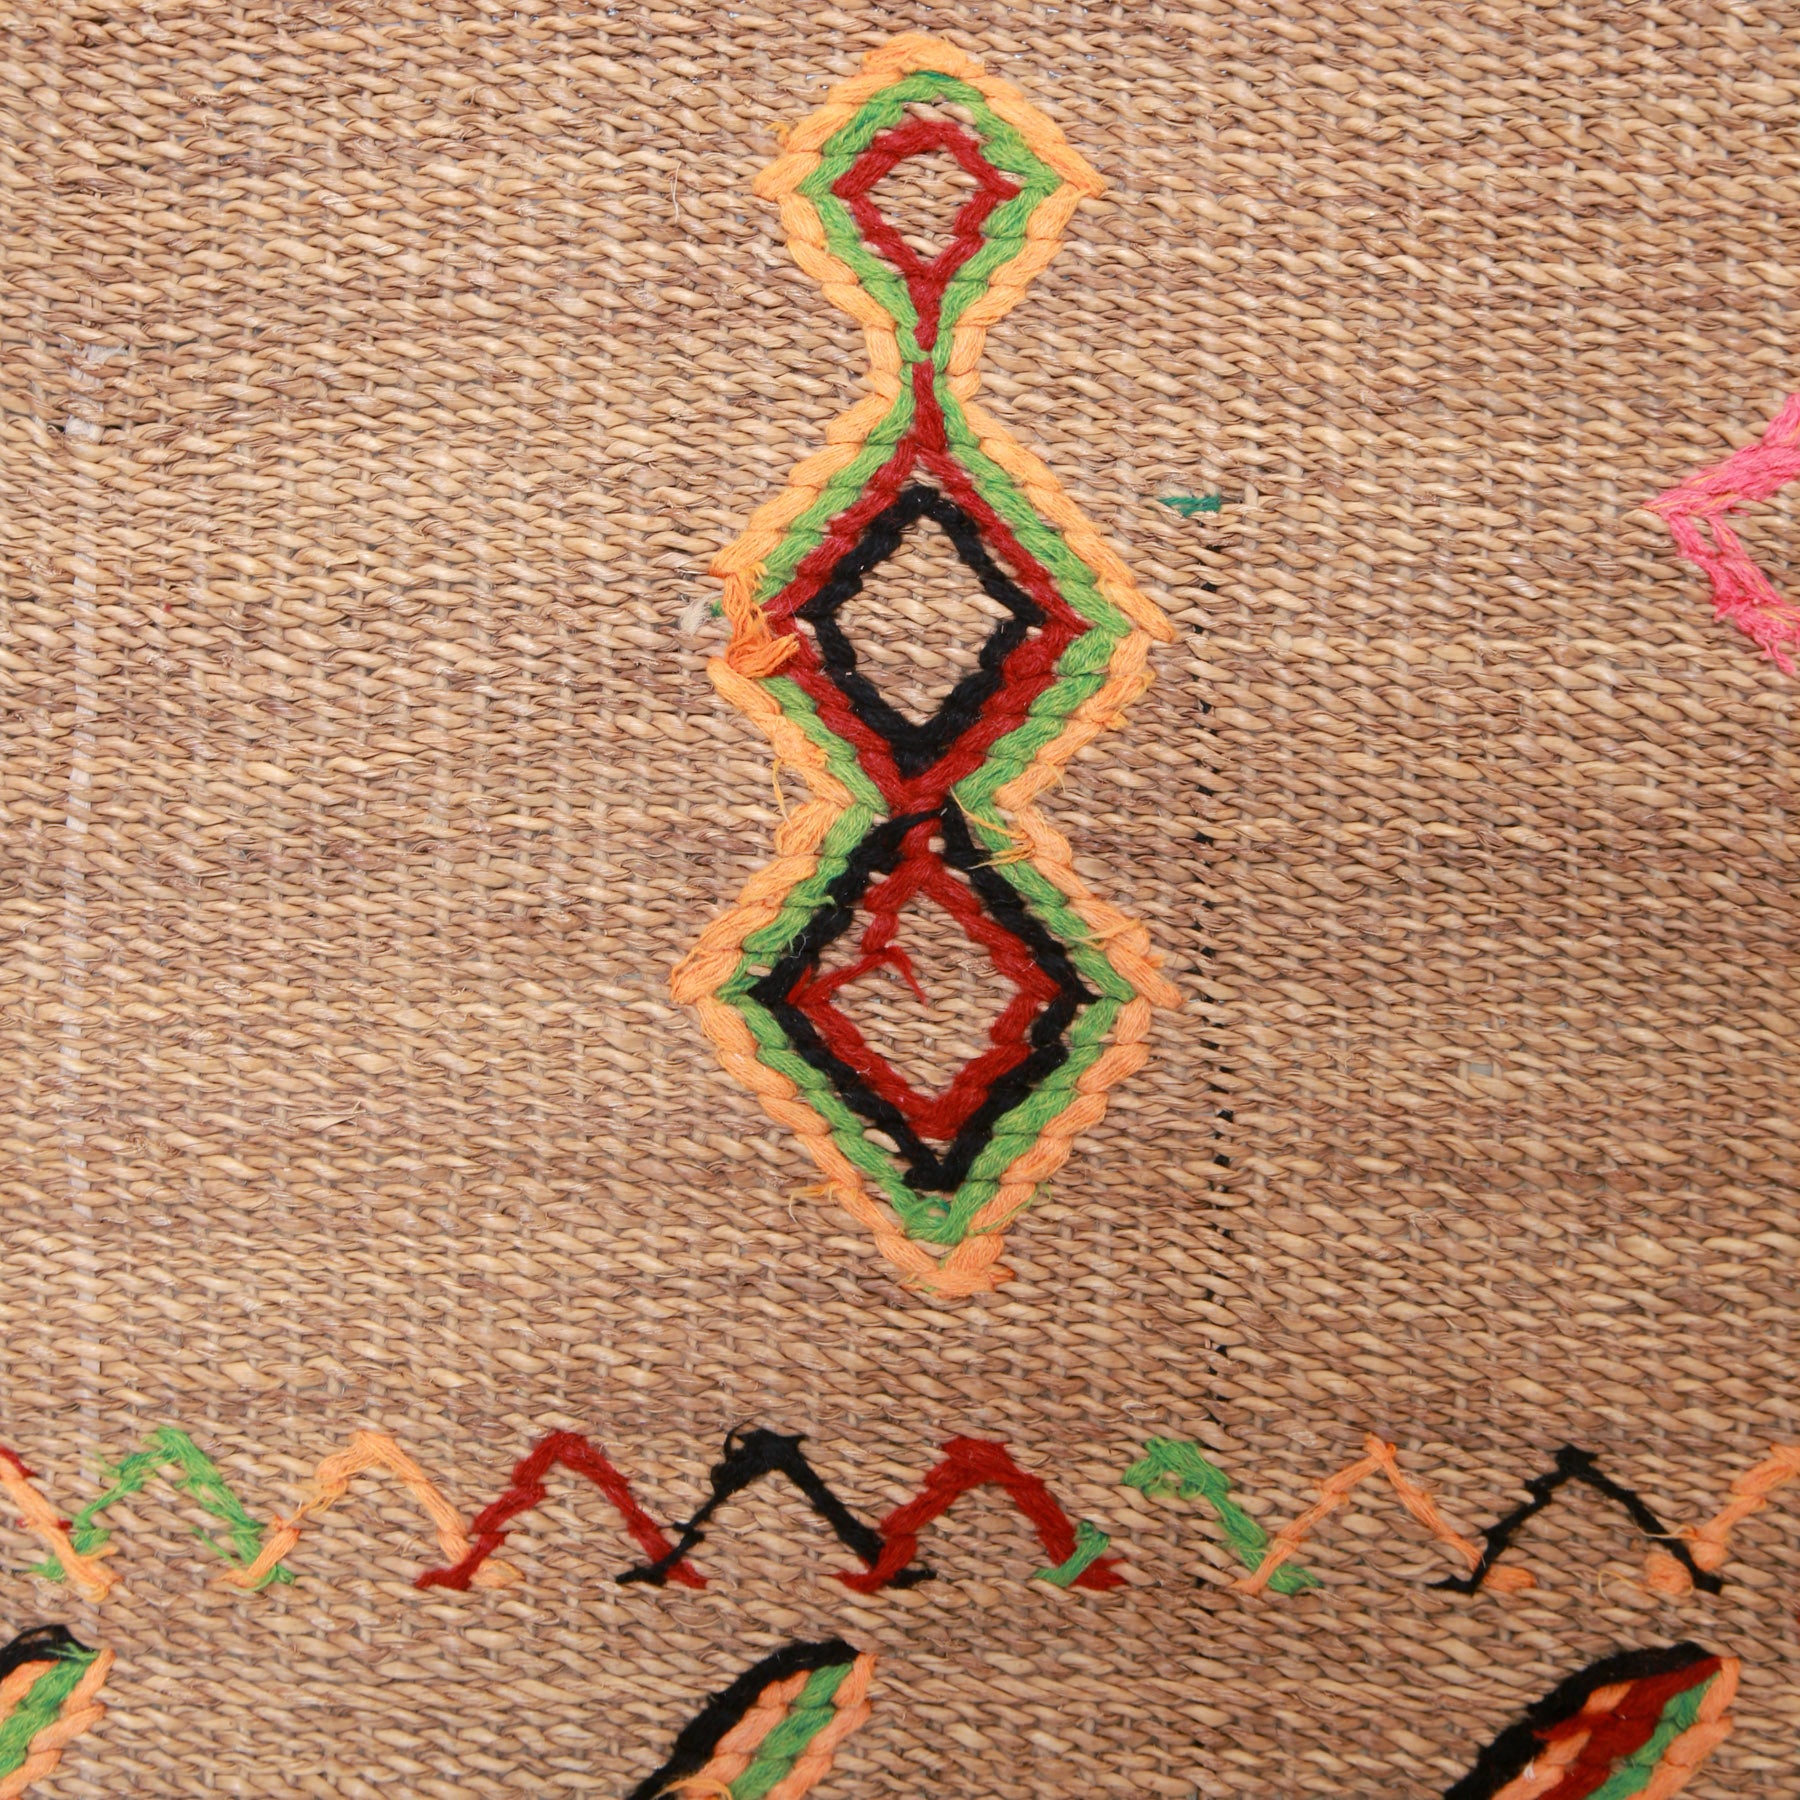 dettaglio del ricamo in lana arancione verde rosso e nere di rombi di tre rombi posizionati uno sopra l'altro suo una stuoia in paglia di palma vintage